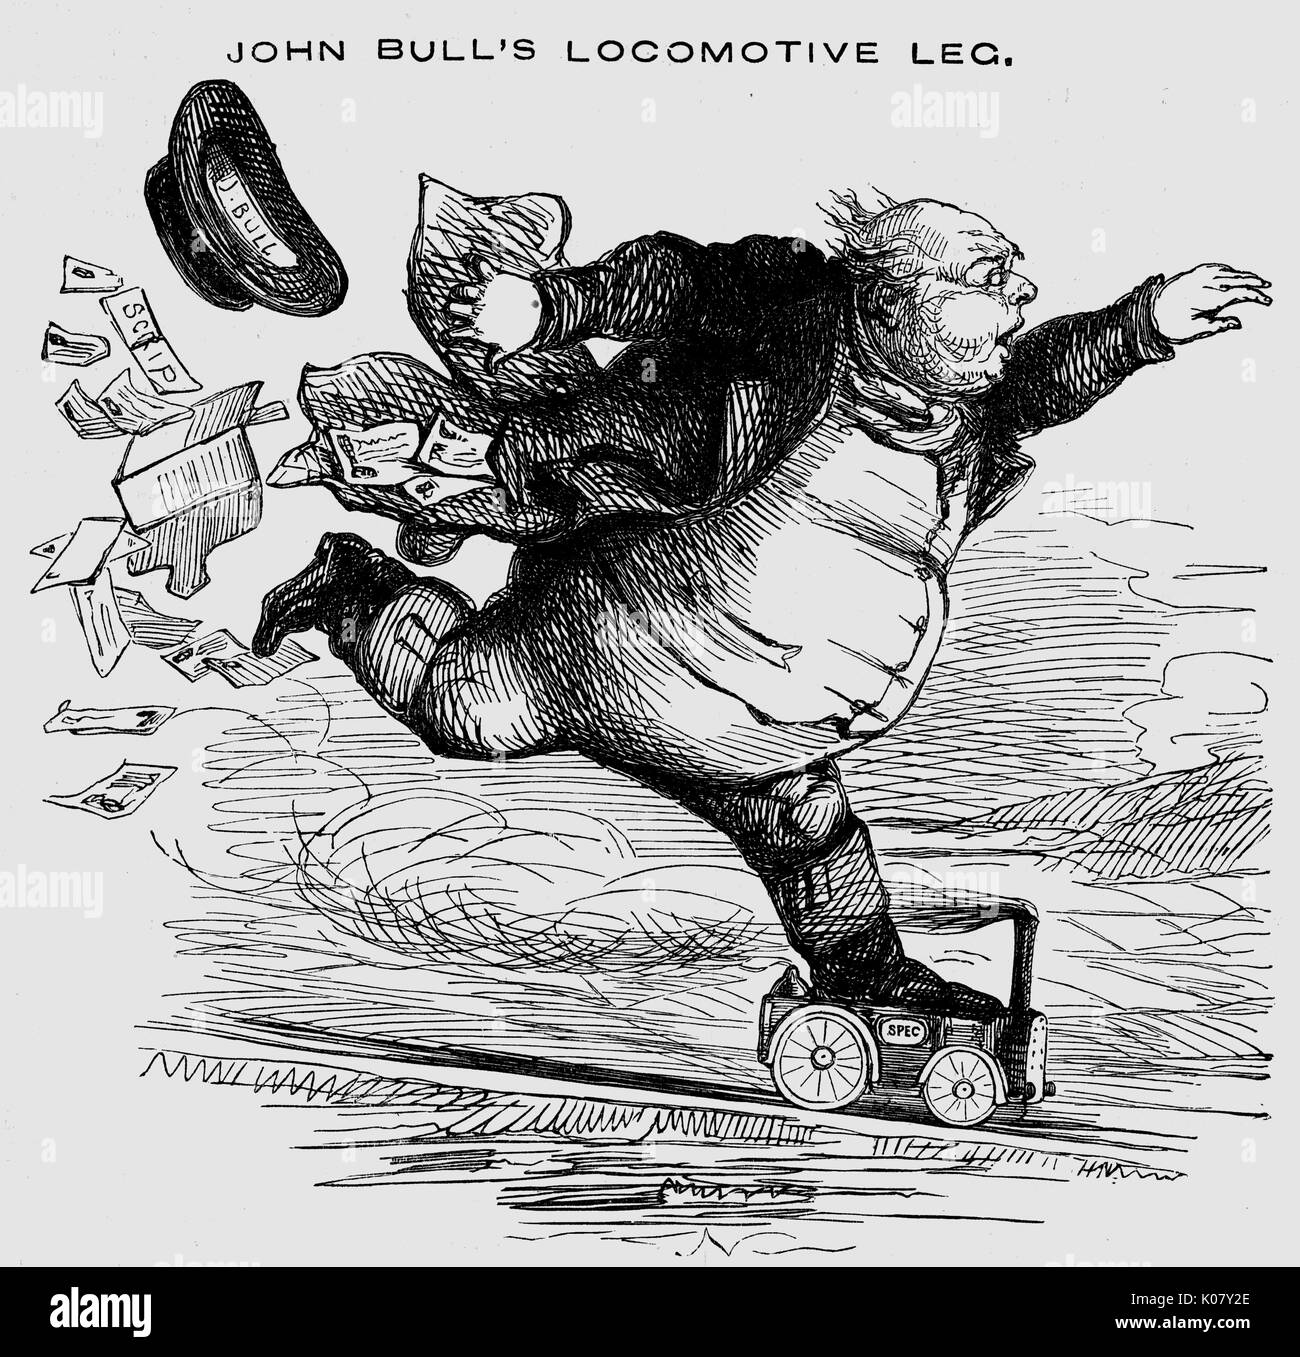 John Bull locomotiva della gamba. Data: 1845 Foto Stock